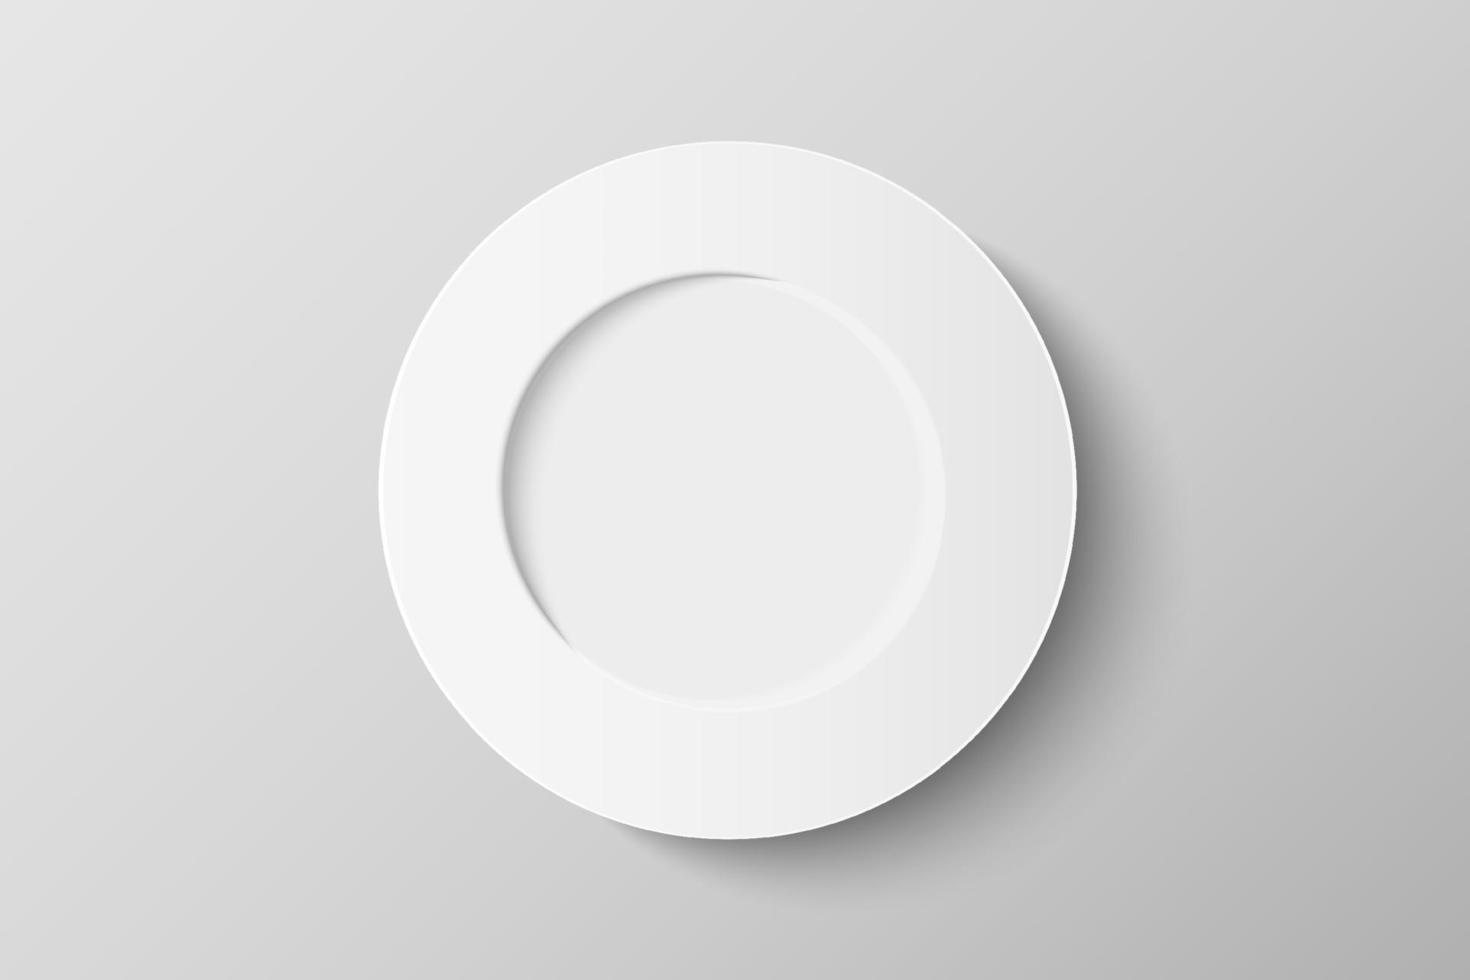 Vista dall'alto 3d del modello di piastra in ceramica bianca isolato su sfondo. piatto disteso con spazio per la copia. illustrazione vettoriale realistica.